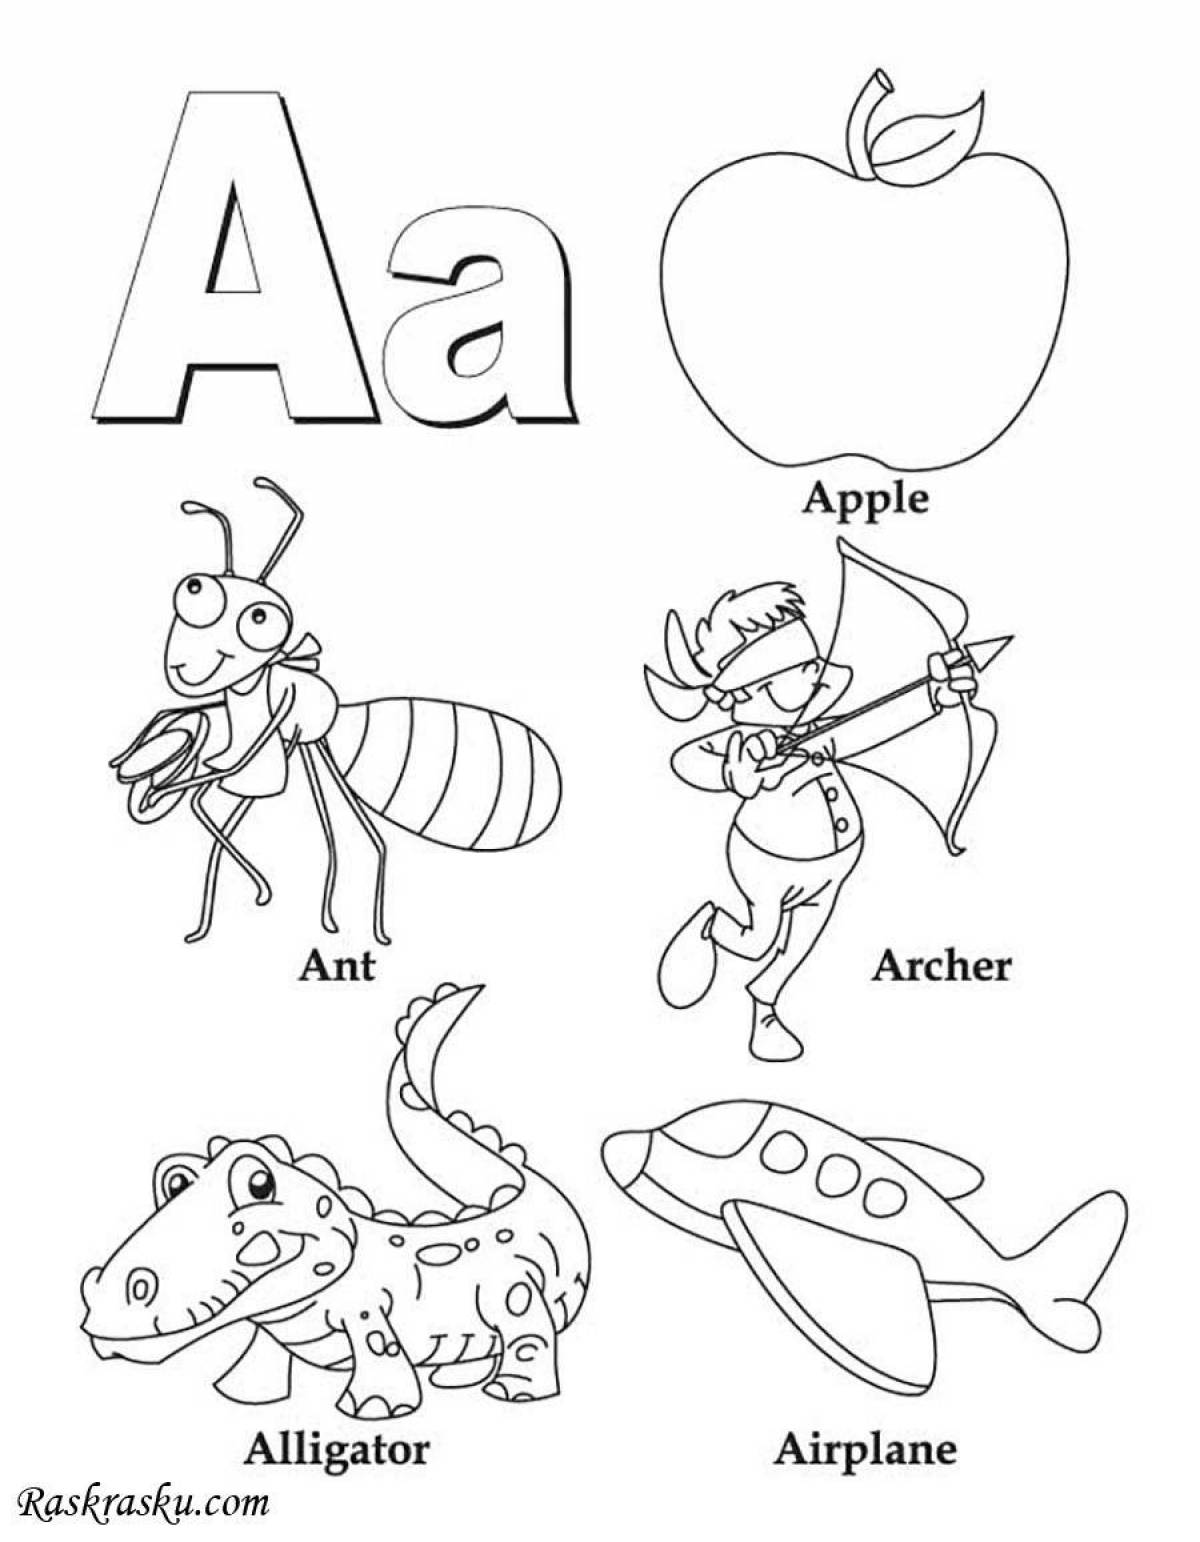 Раскраски буквы английского алфавита с картинками распечатать или скачать | Детские раскраски